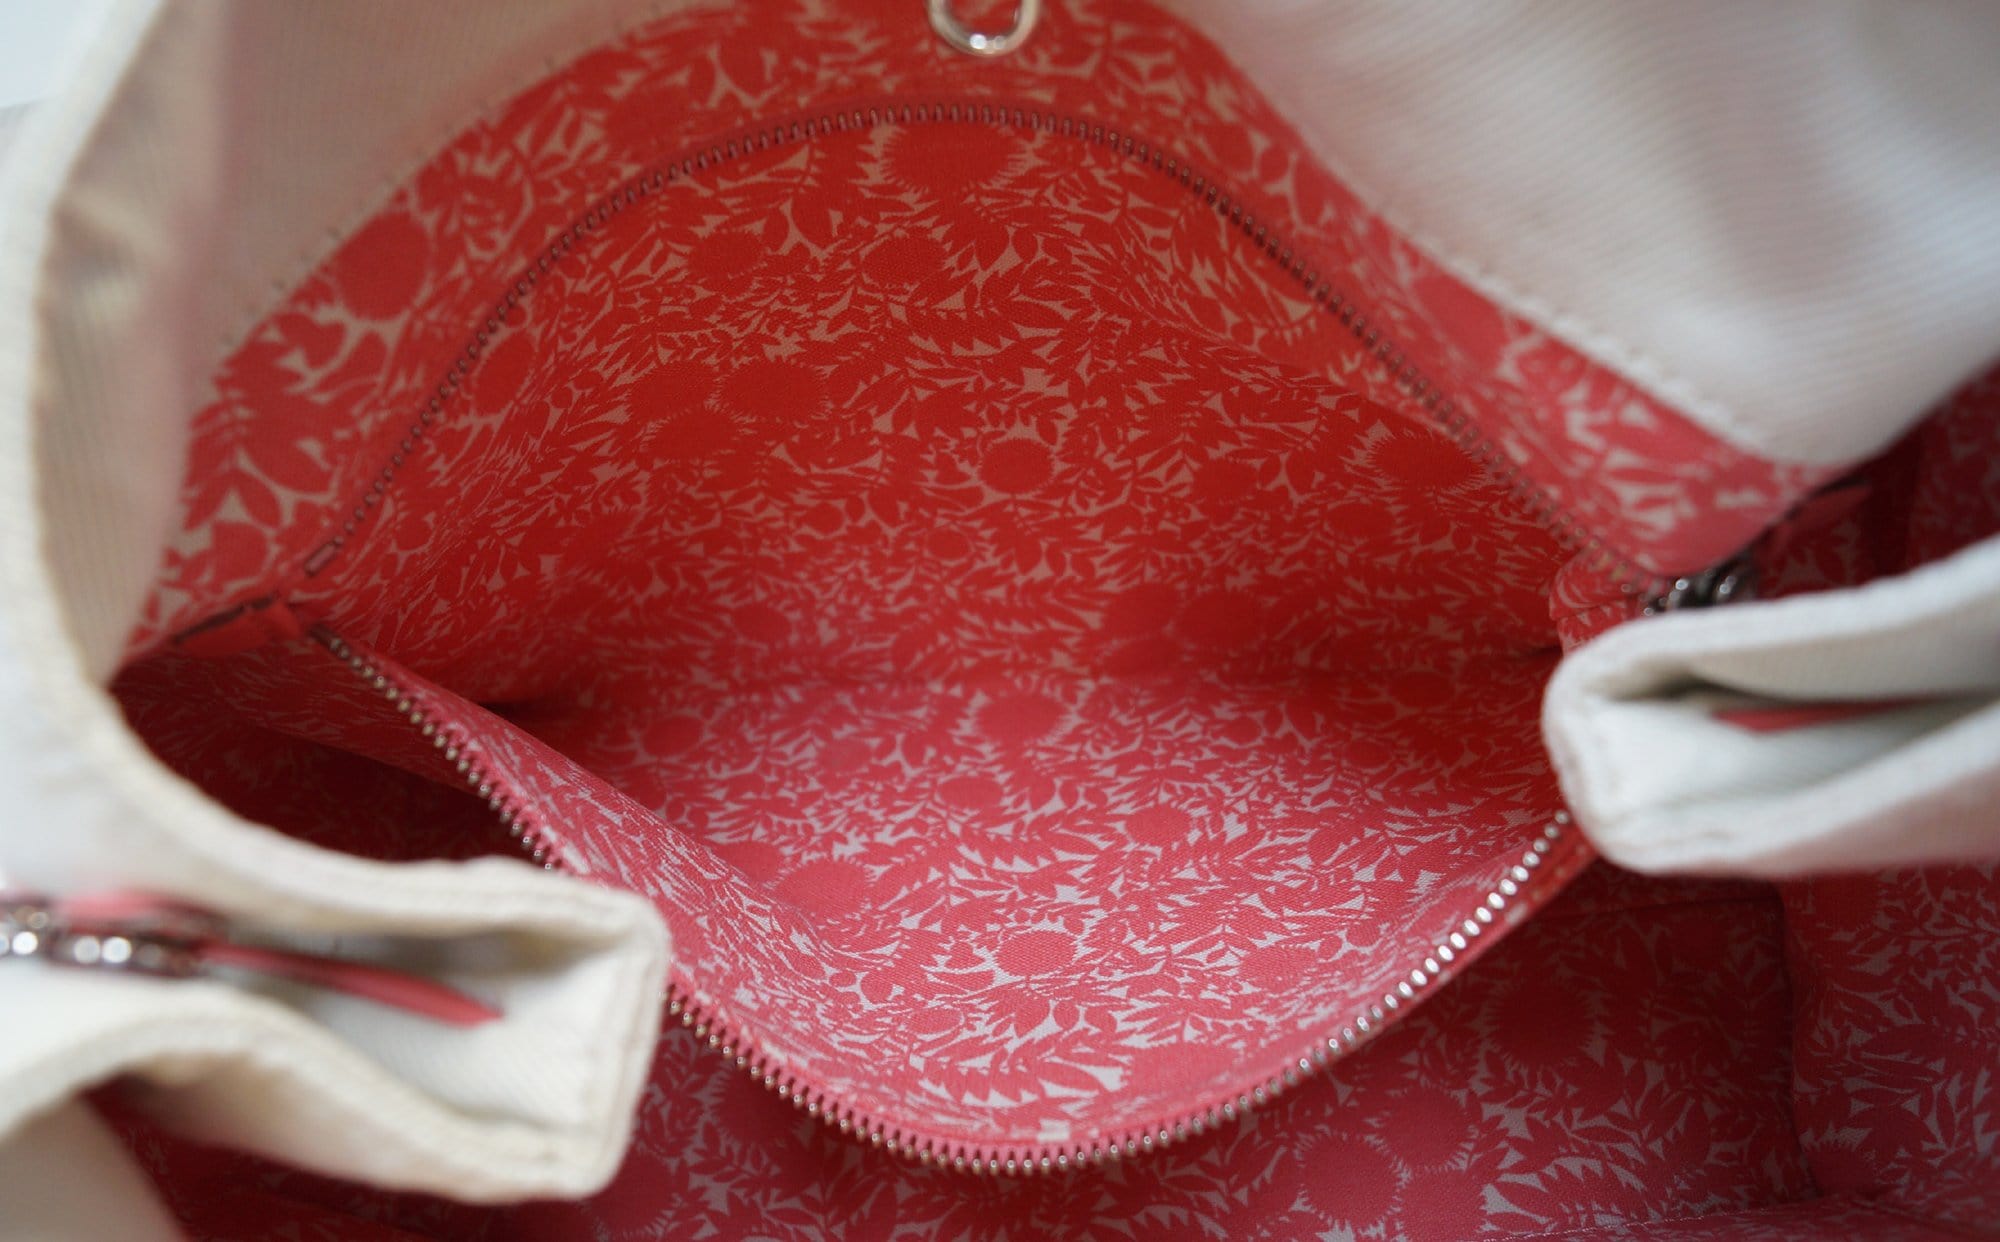 Louis Vuitton 'articles De Voyage Cabas' Handbag